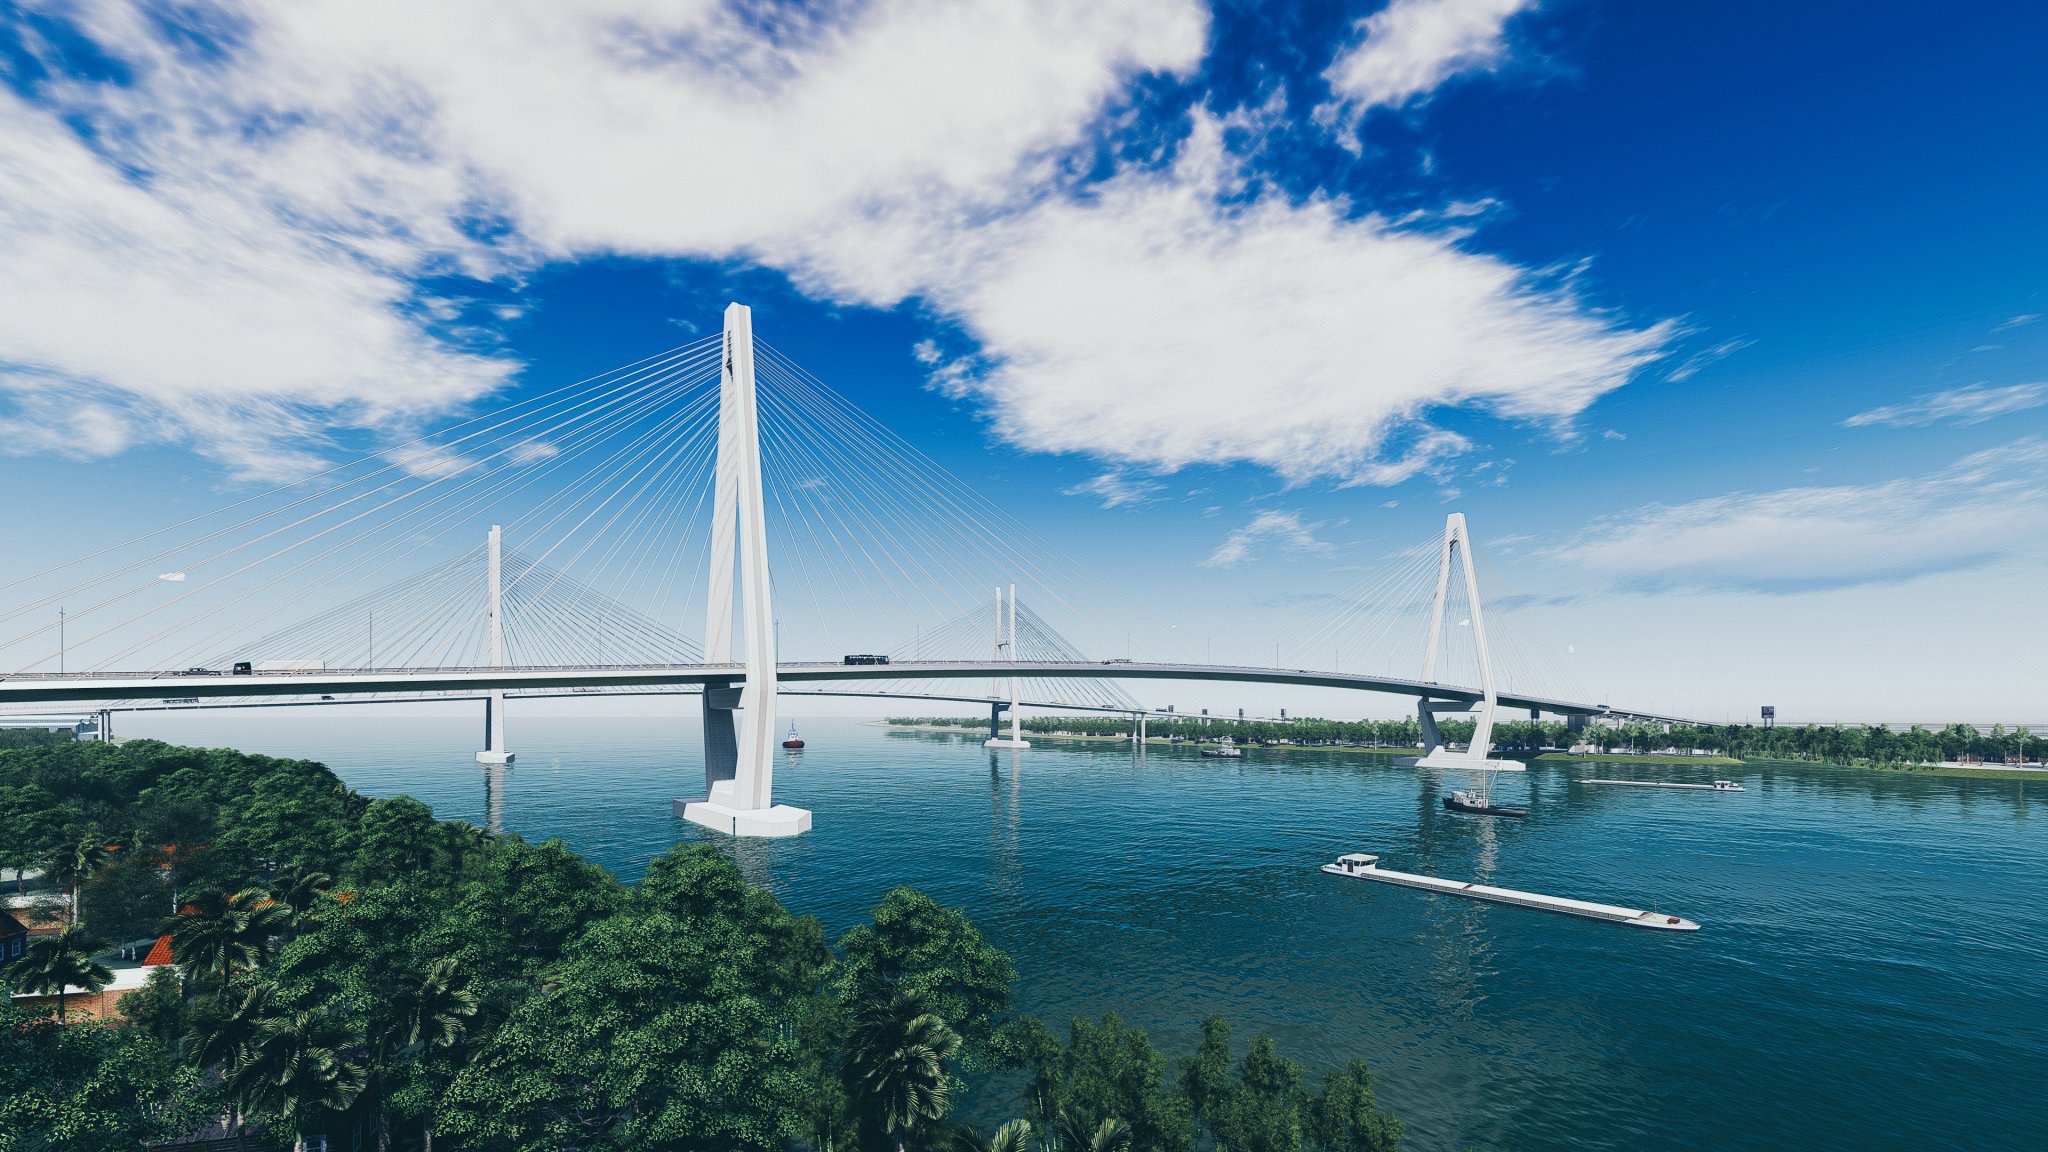 Phối cảnh phần cầu chính dây văng Mỹ Thuận 2 vượt sông Tiền trên cao tốc Bắc - Nam phía Đông.